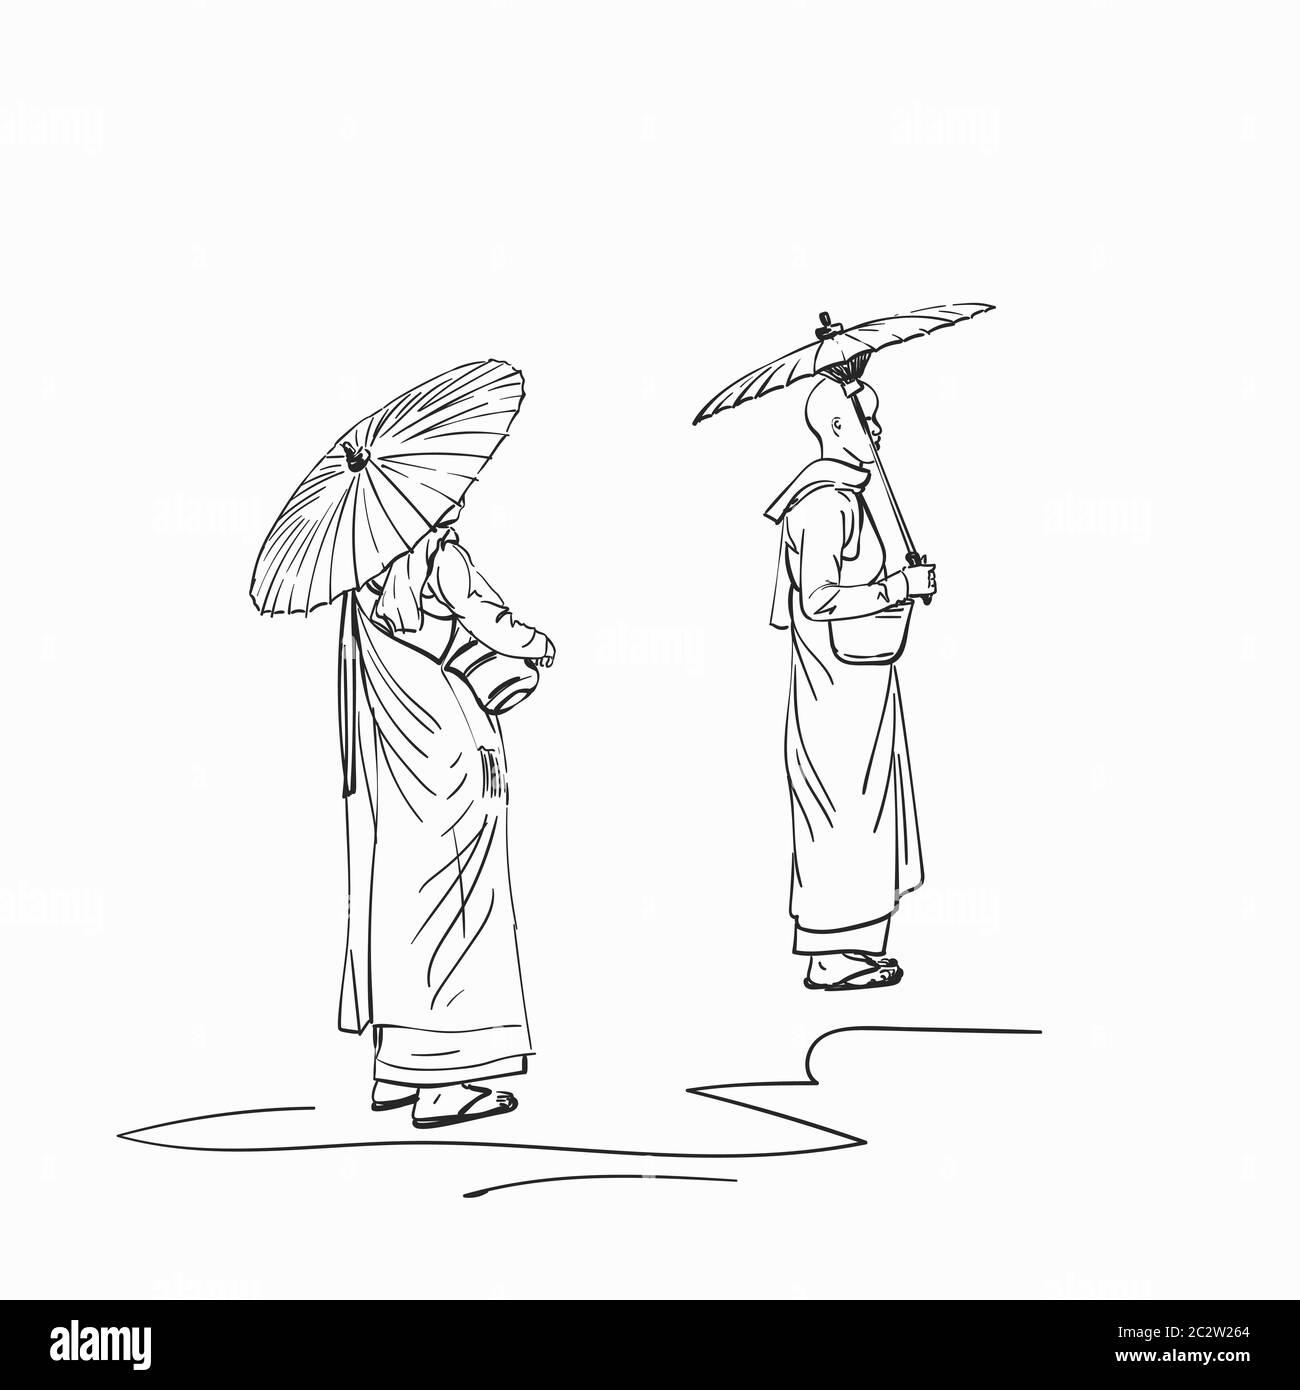 Croquis de nonnes bouddhistes birmanes avec parasols, illustration vectorielle dessinée à la main Illustration de Vecteur